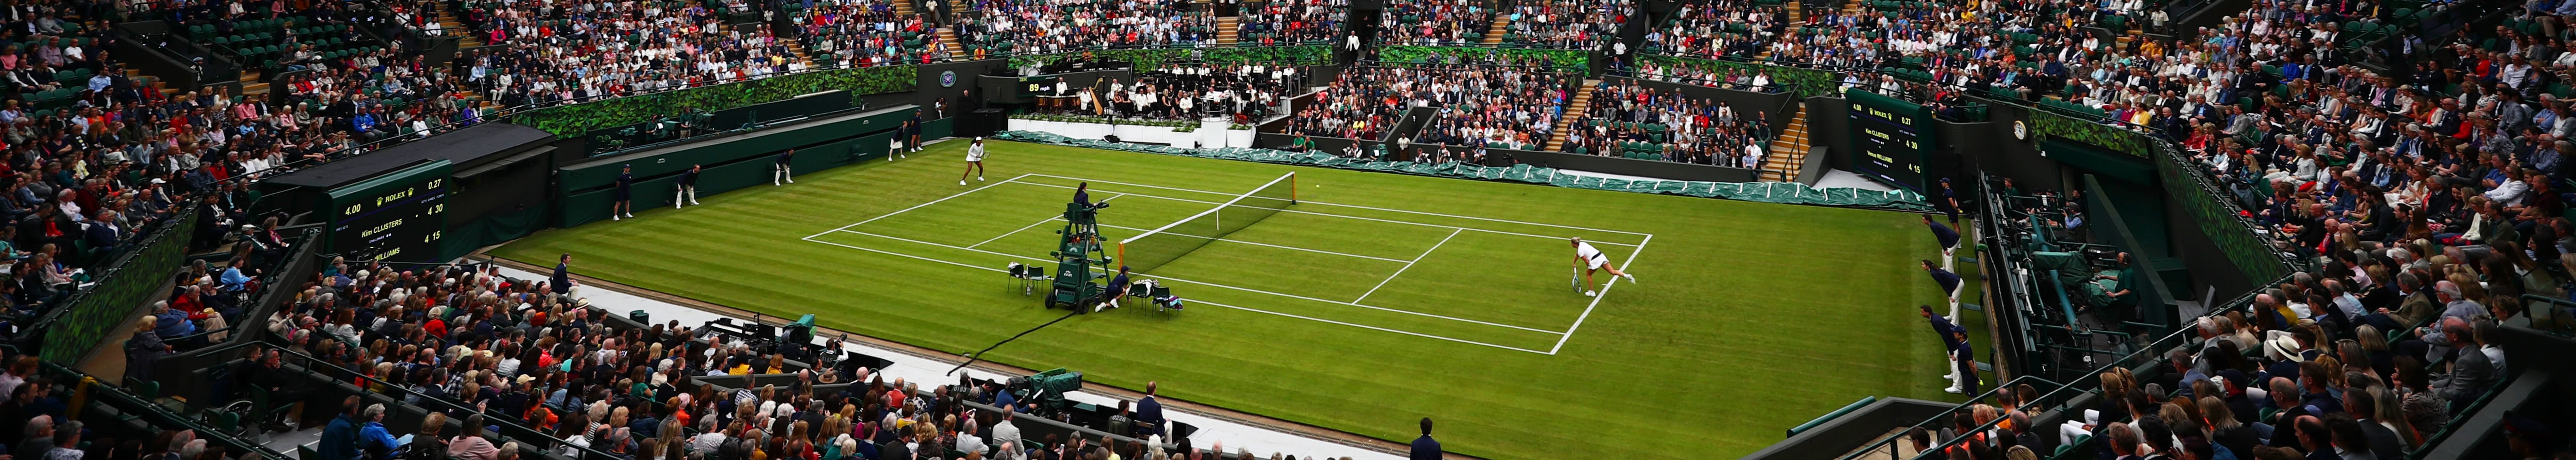 Βρετανικό Grand Slam: Ώρα για Wimbledon!